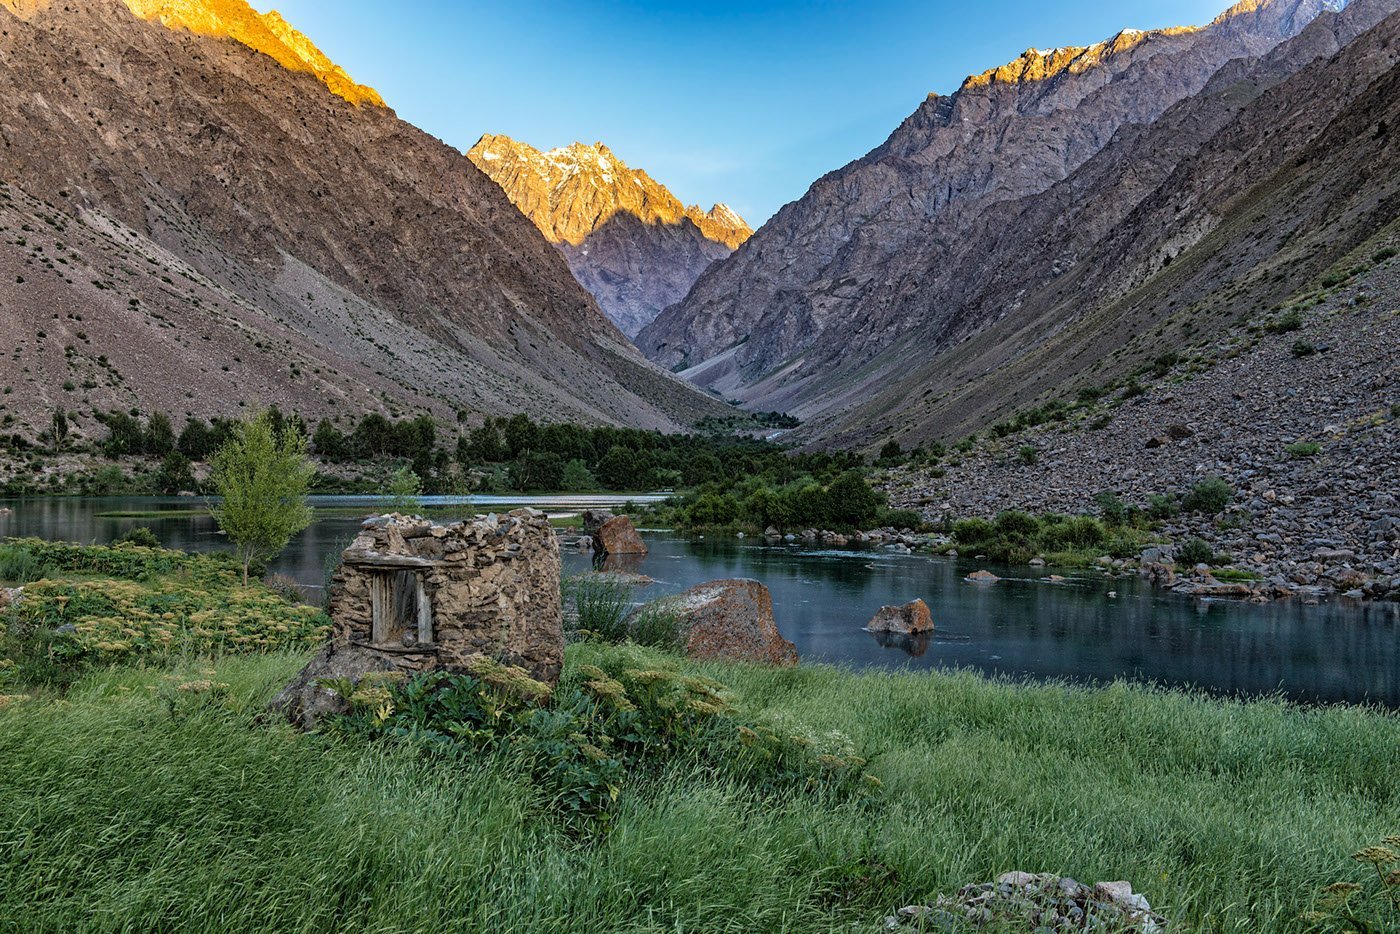 Кишлак уходит. Фанские горы Памир. Горный Таджикистан Памир. Памир река Бартанг. Национальный парк Памир Таджикистан.